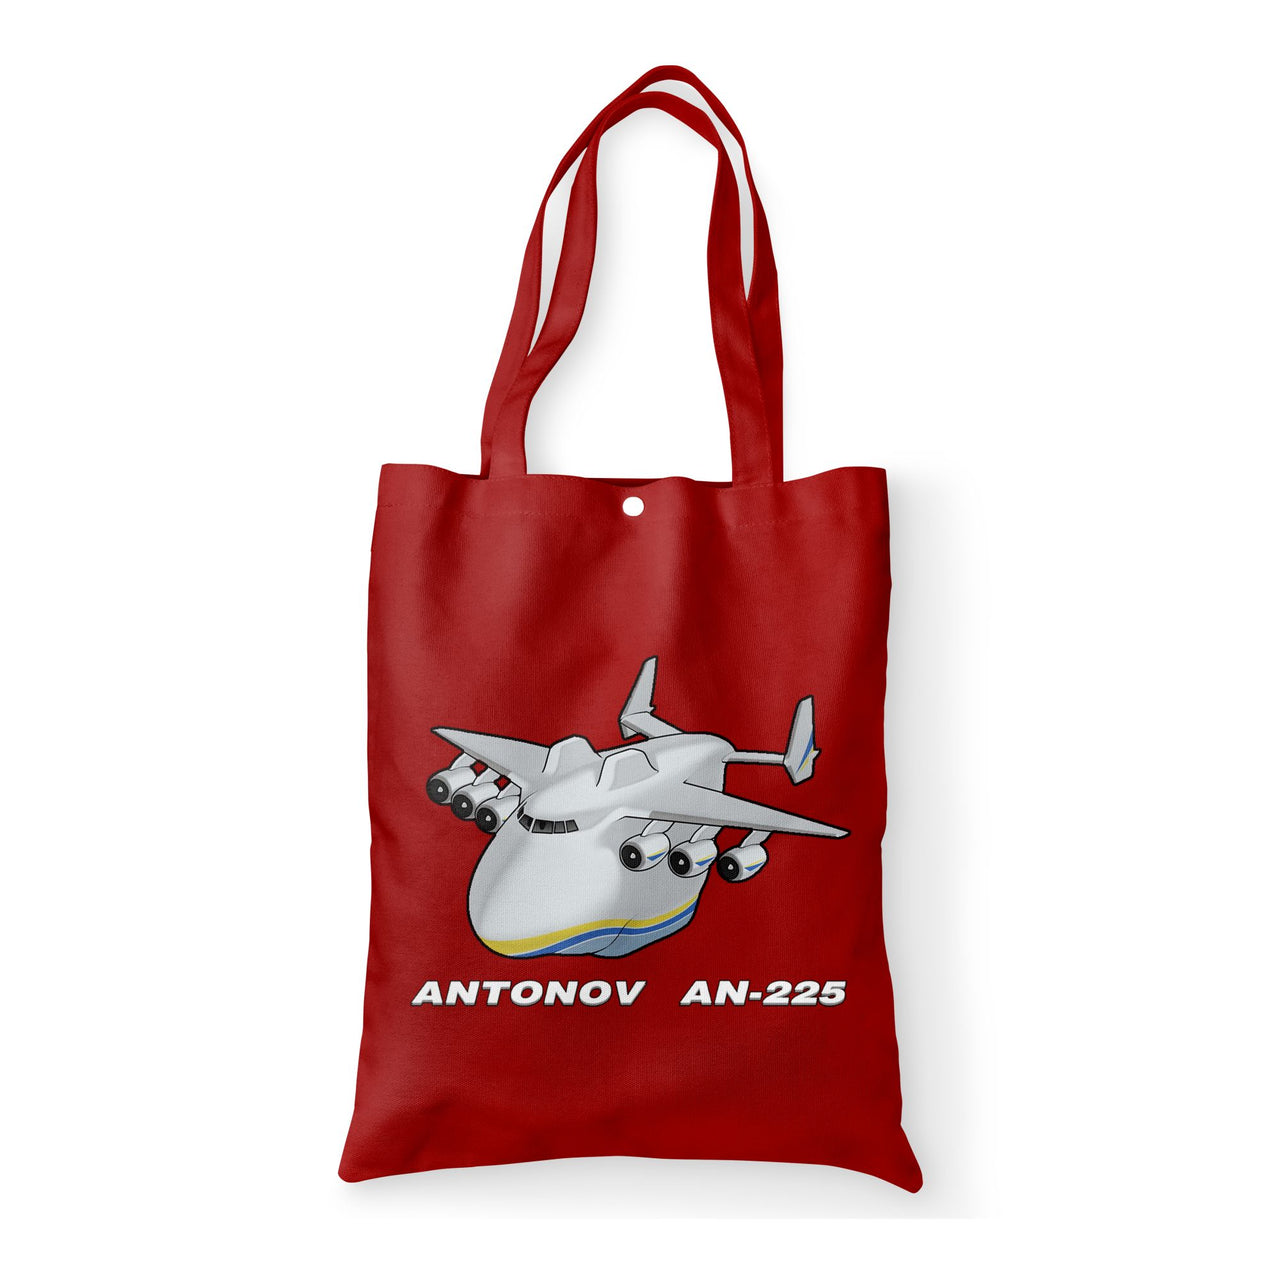 Antonov AN-225 (29) Designed Tote Bags